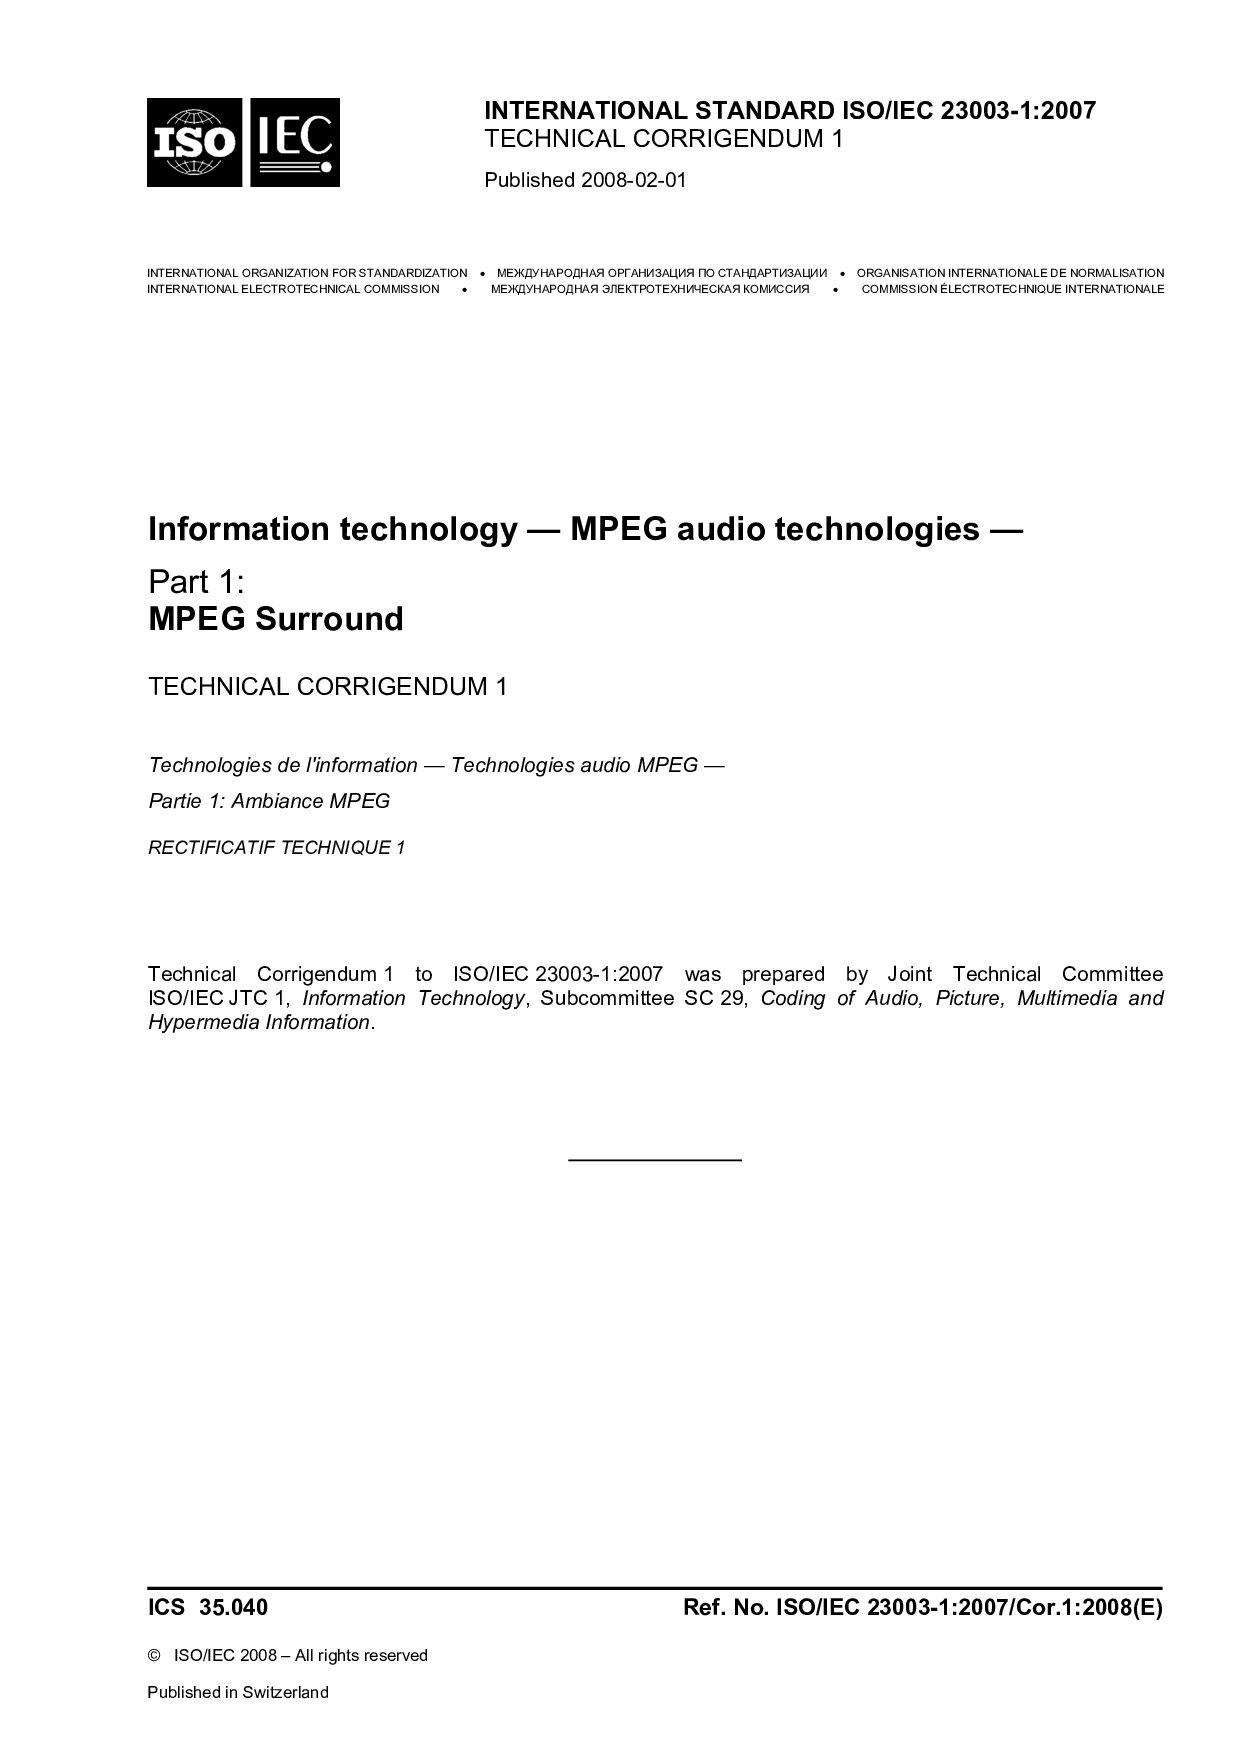 ISO/IEC 23003-1:2007/Cor 1:2008封面图